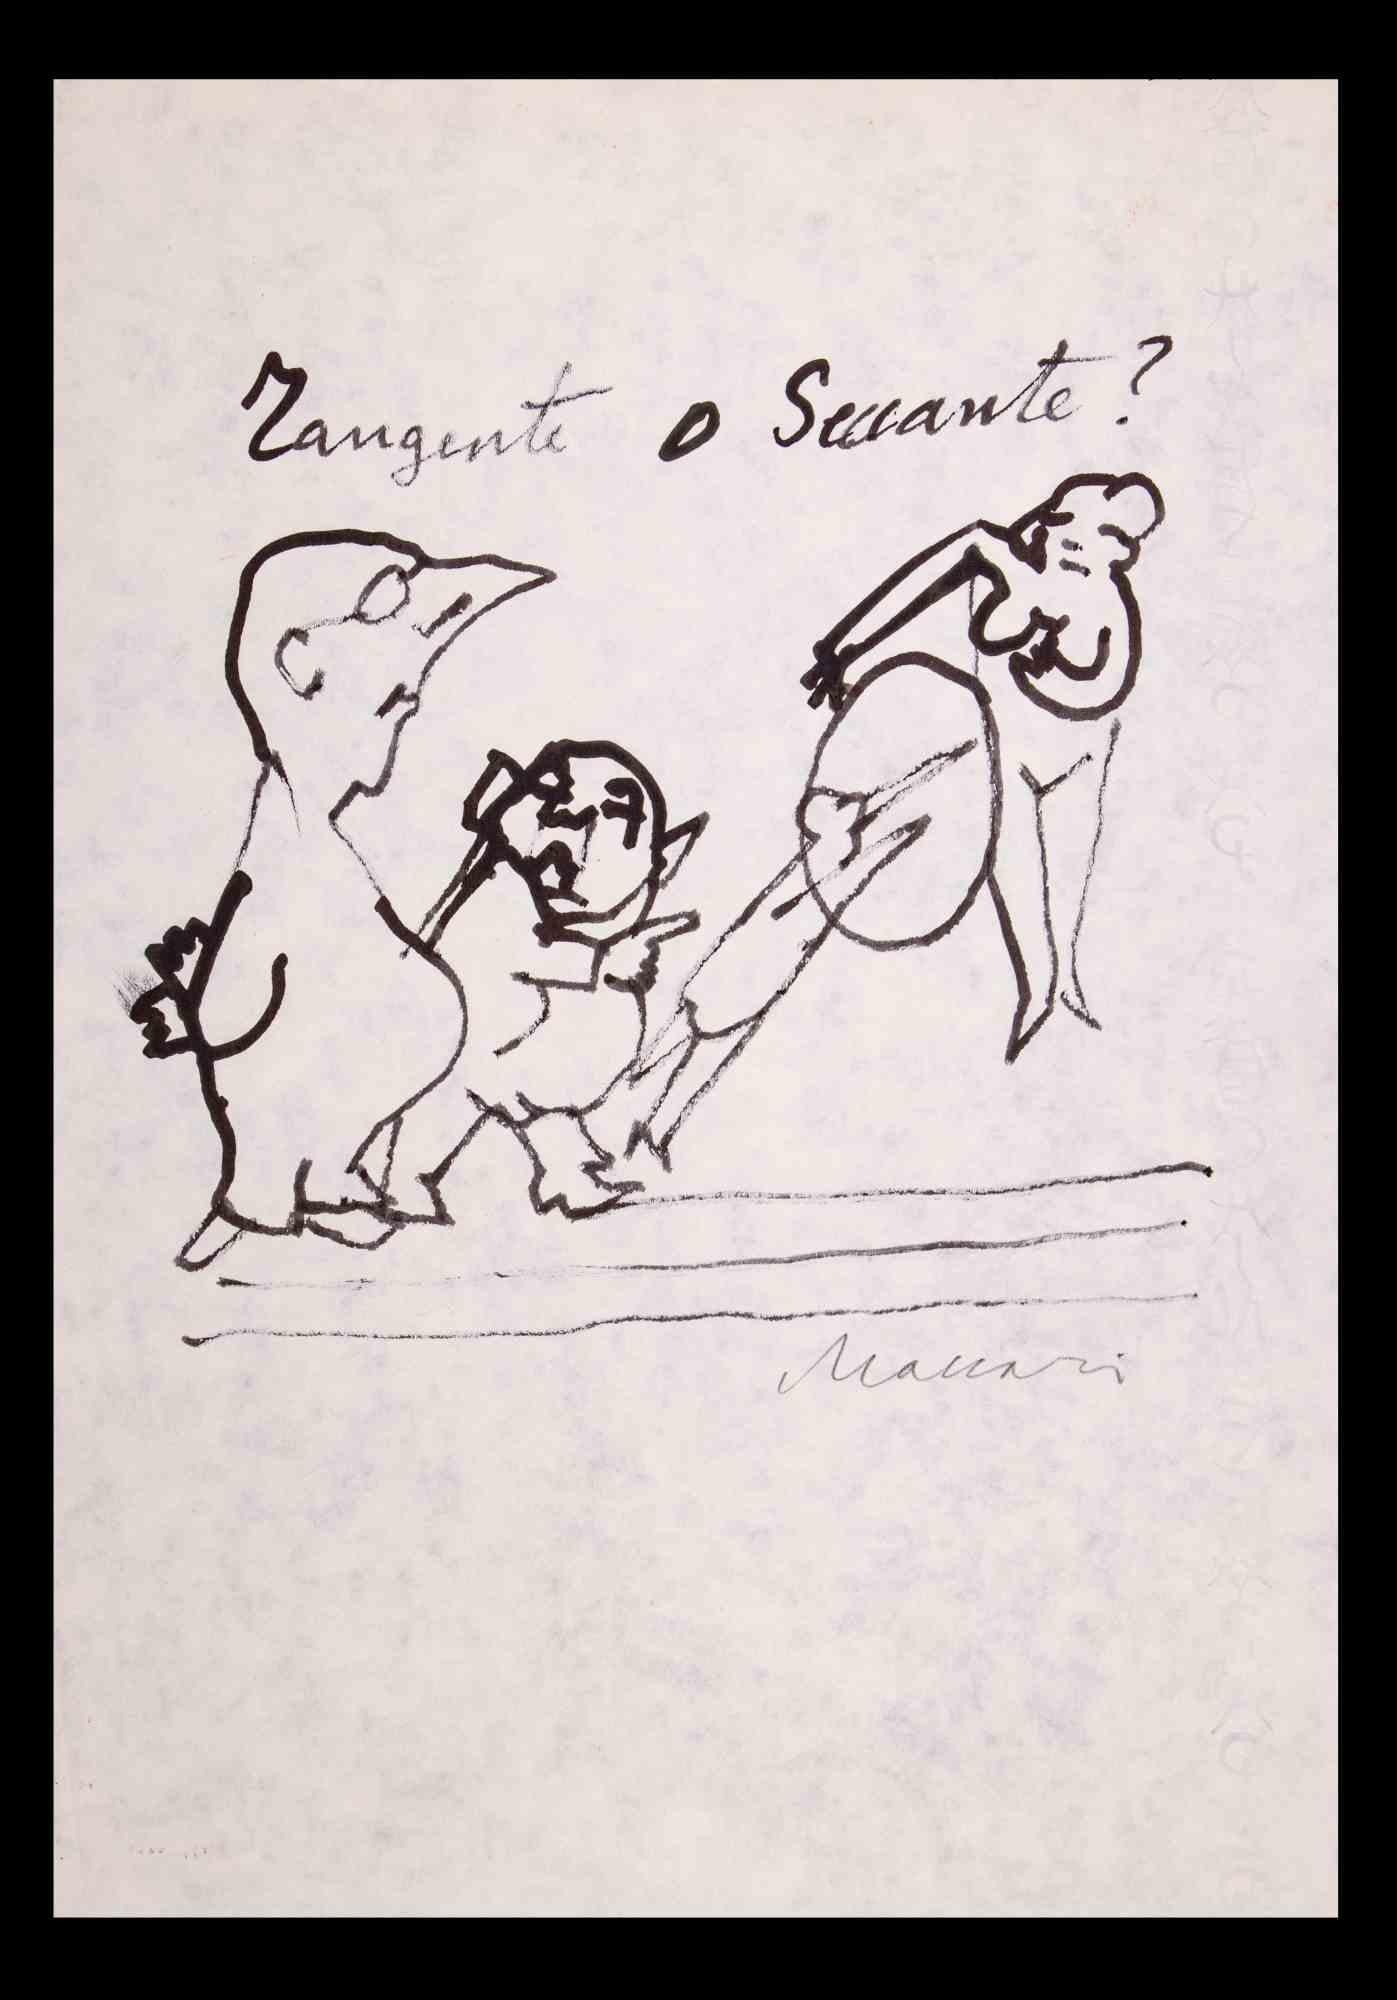 Tangent or Annoying? ist eine Federzeichnung von Mino Maccari (1924-1989) aus den 1970er Jahren.

Handsigniert am unteren Rand.

Guter Zustand auf weißem Papier.

Mino Maccari (Siena, 1924-Rom, 16. Juni 1989) war ein italienischer Schriftsteller,